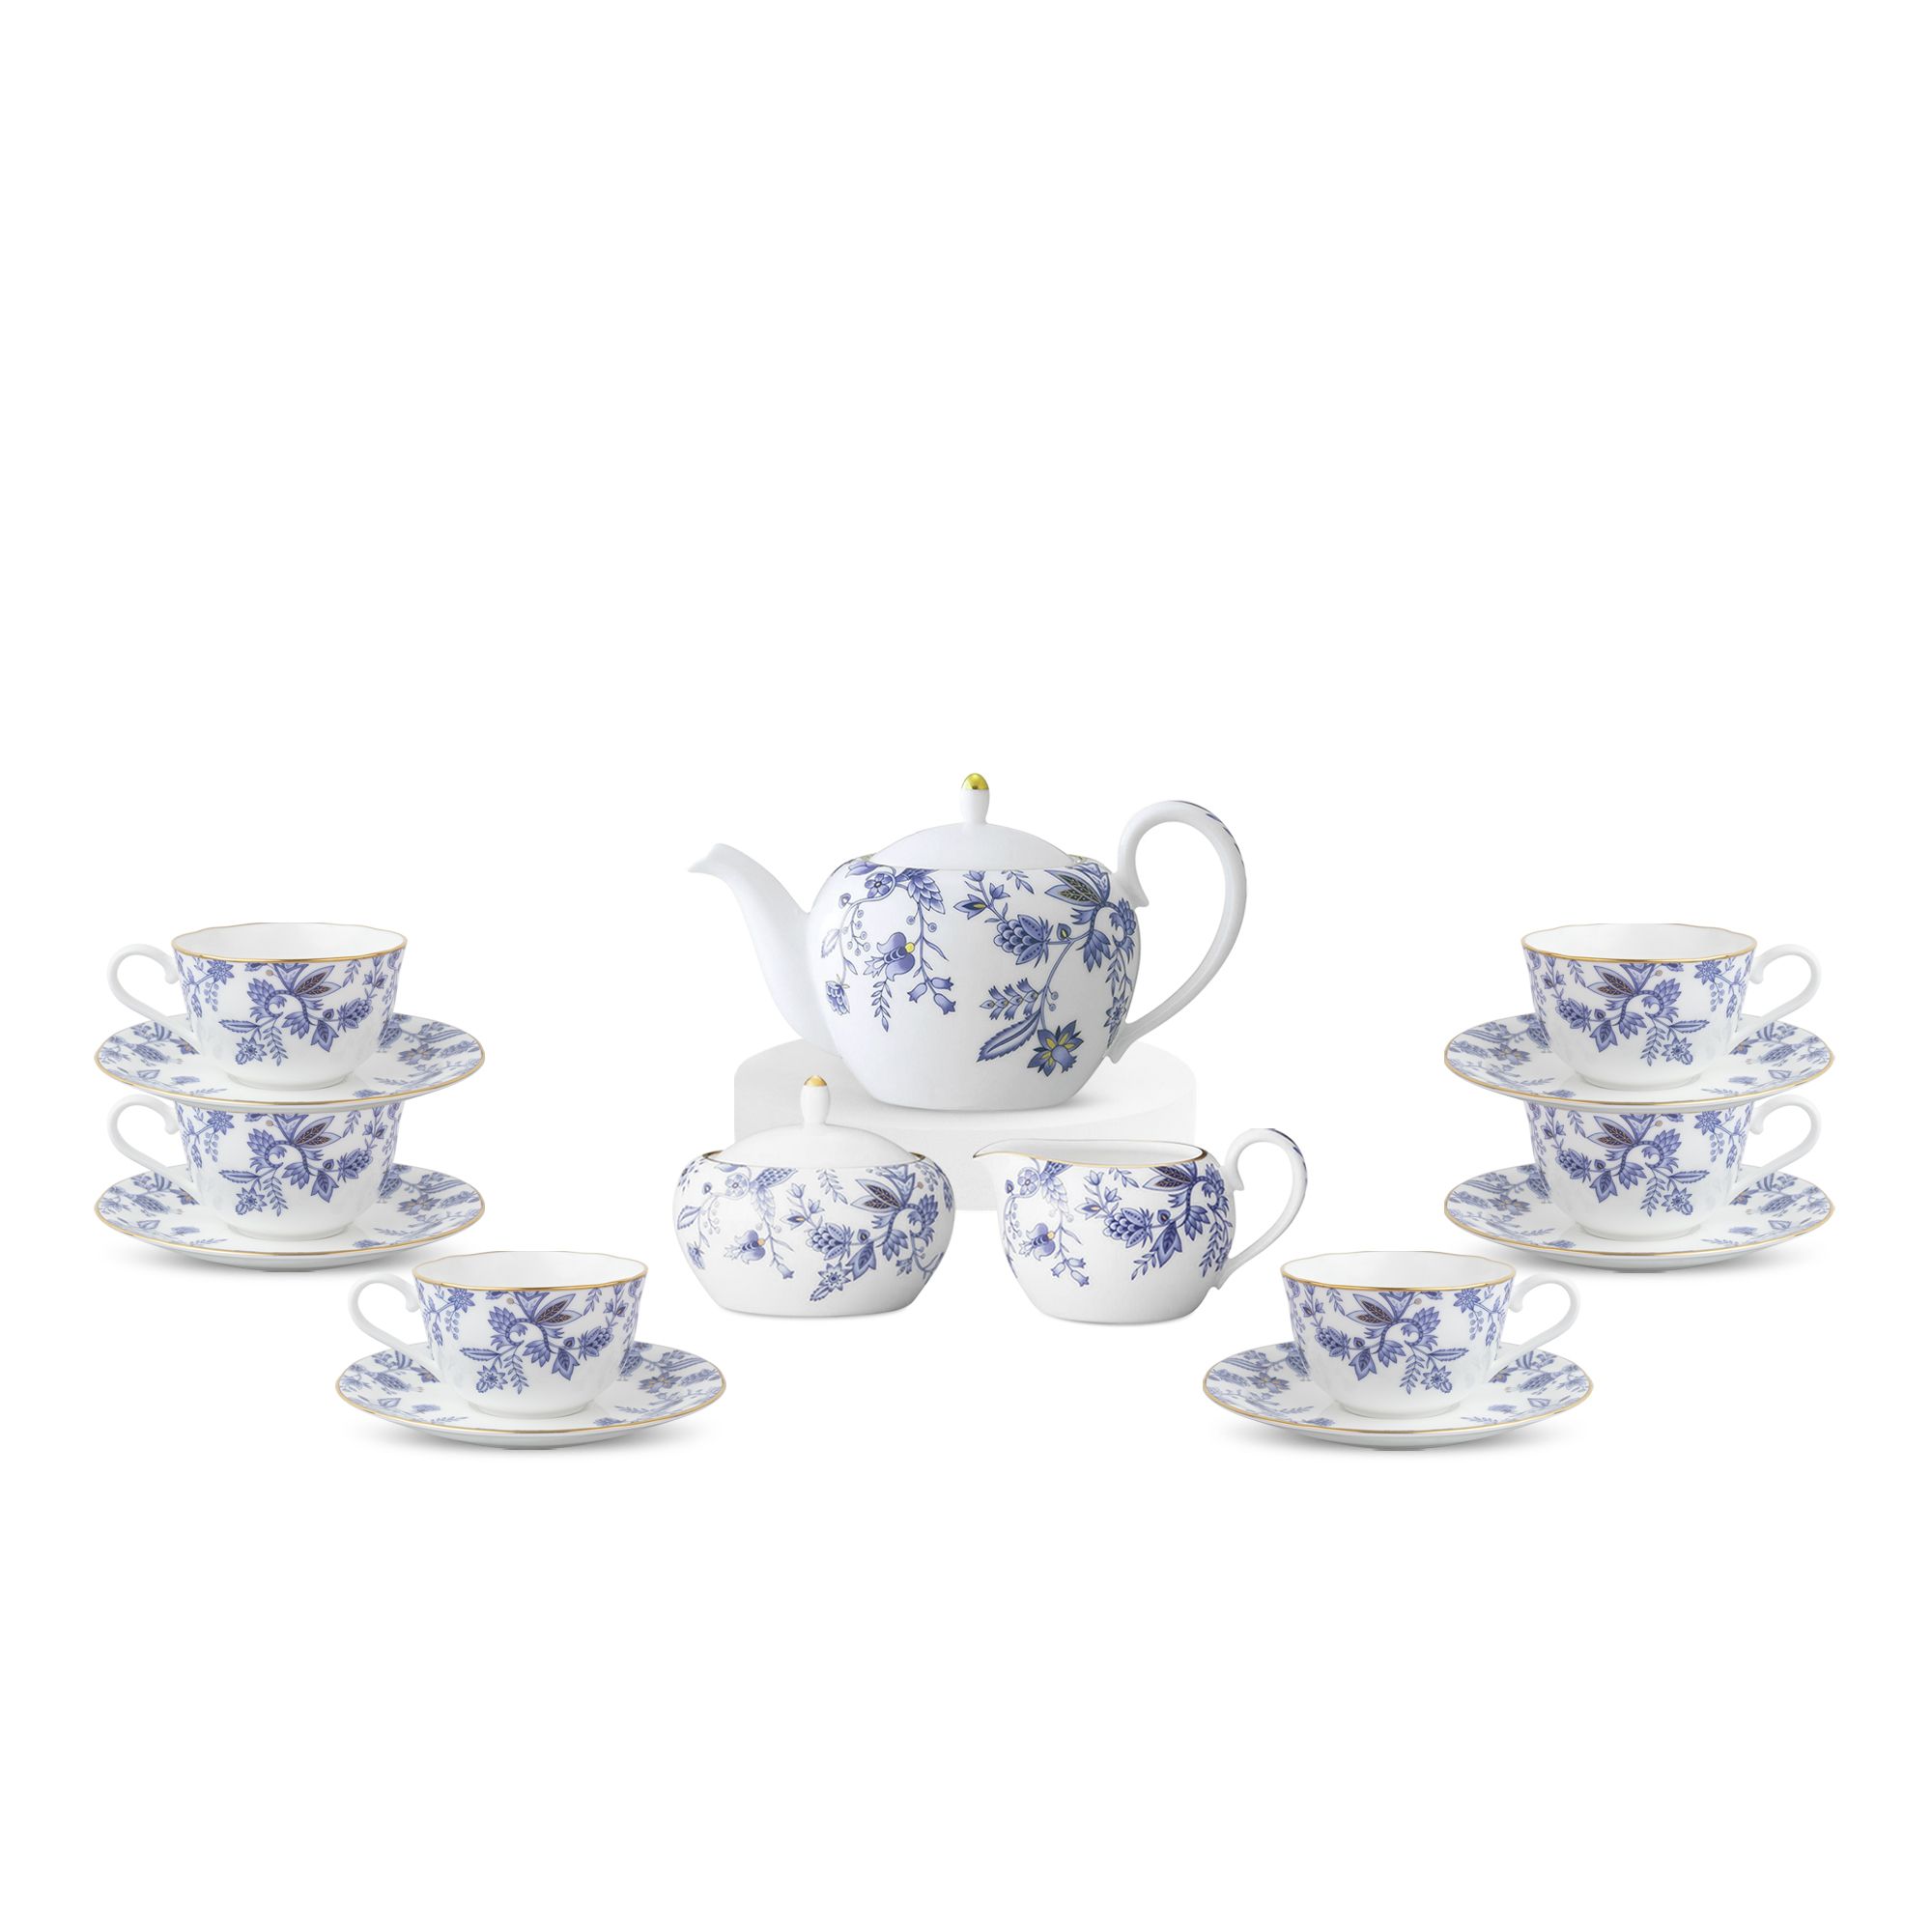  Bộ ấm chén uống trà sứ xương đầy đủ 15 món (Bình trà 520ml, tách trà 220ml) | Blue Sorrentino 4562L 